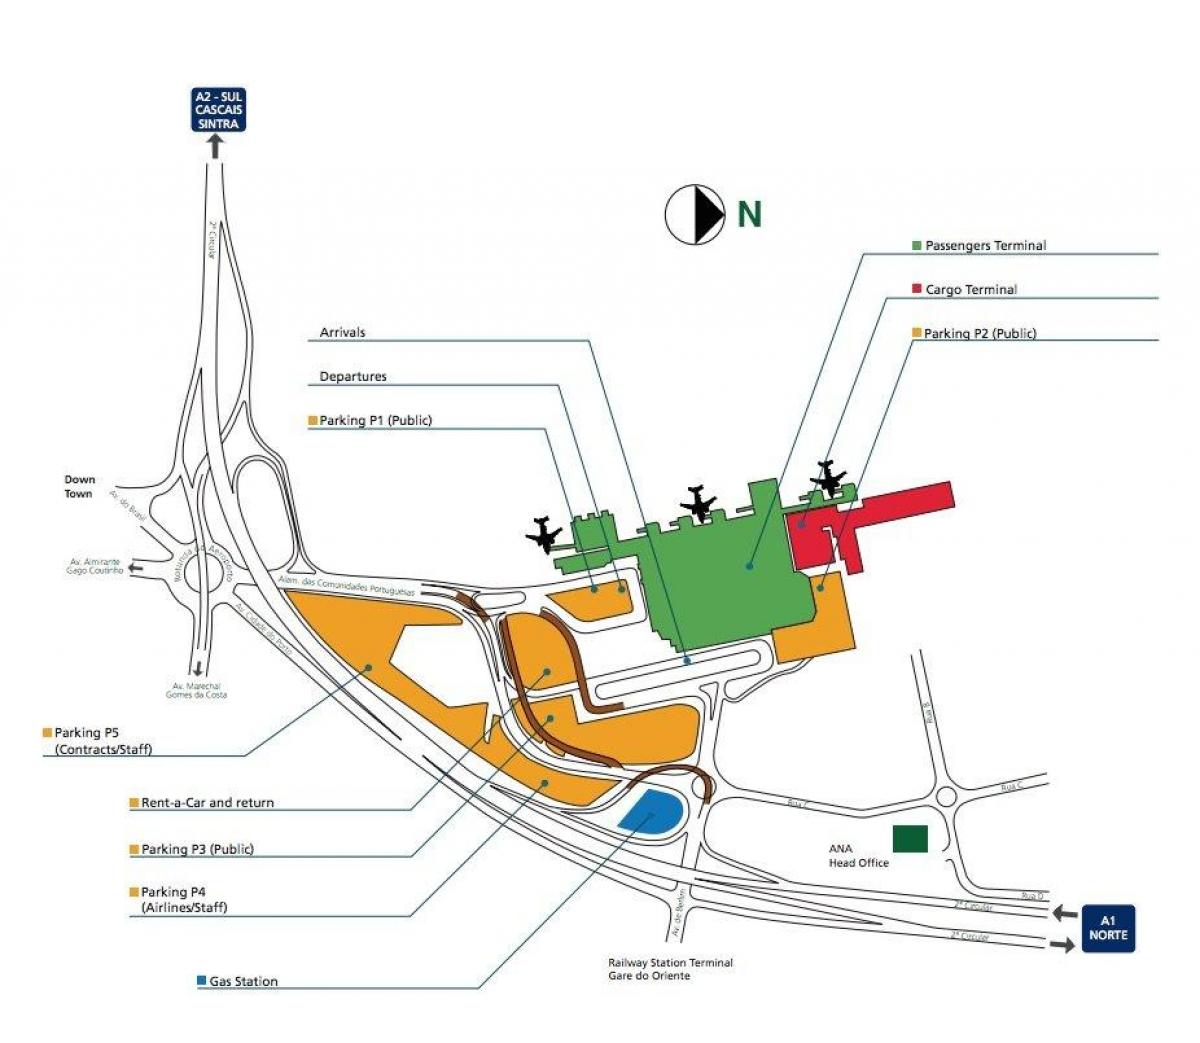 Plan des terminaux aéroport de Lisbon